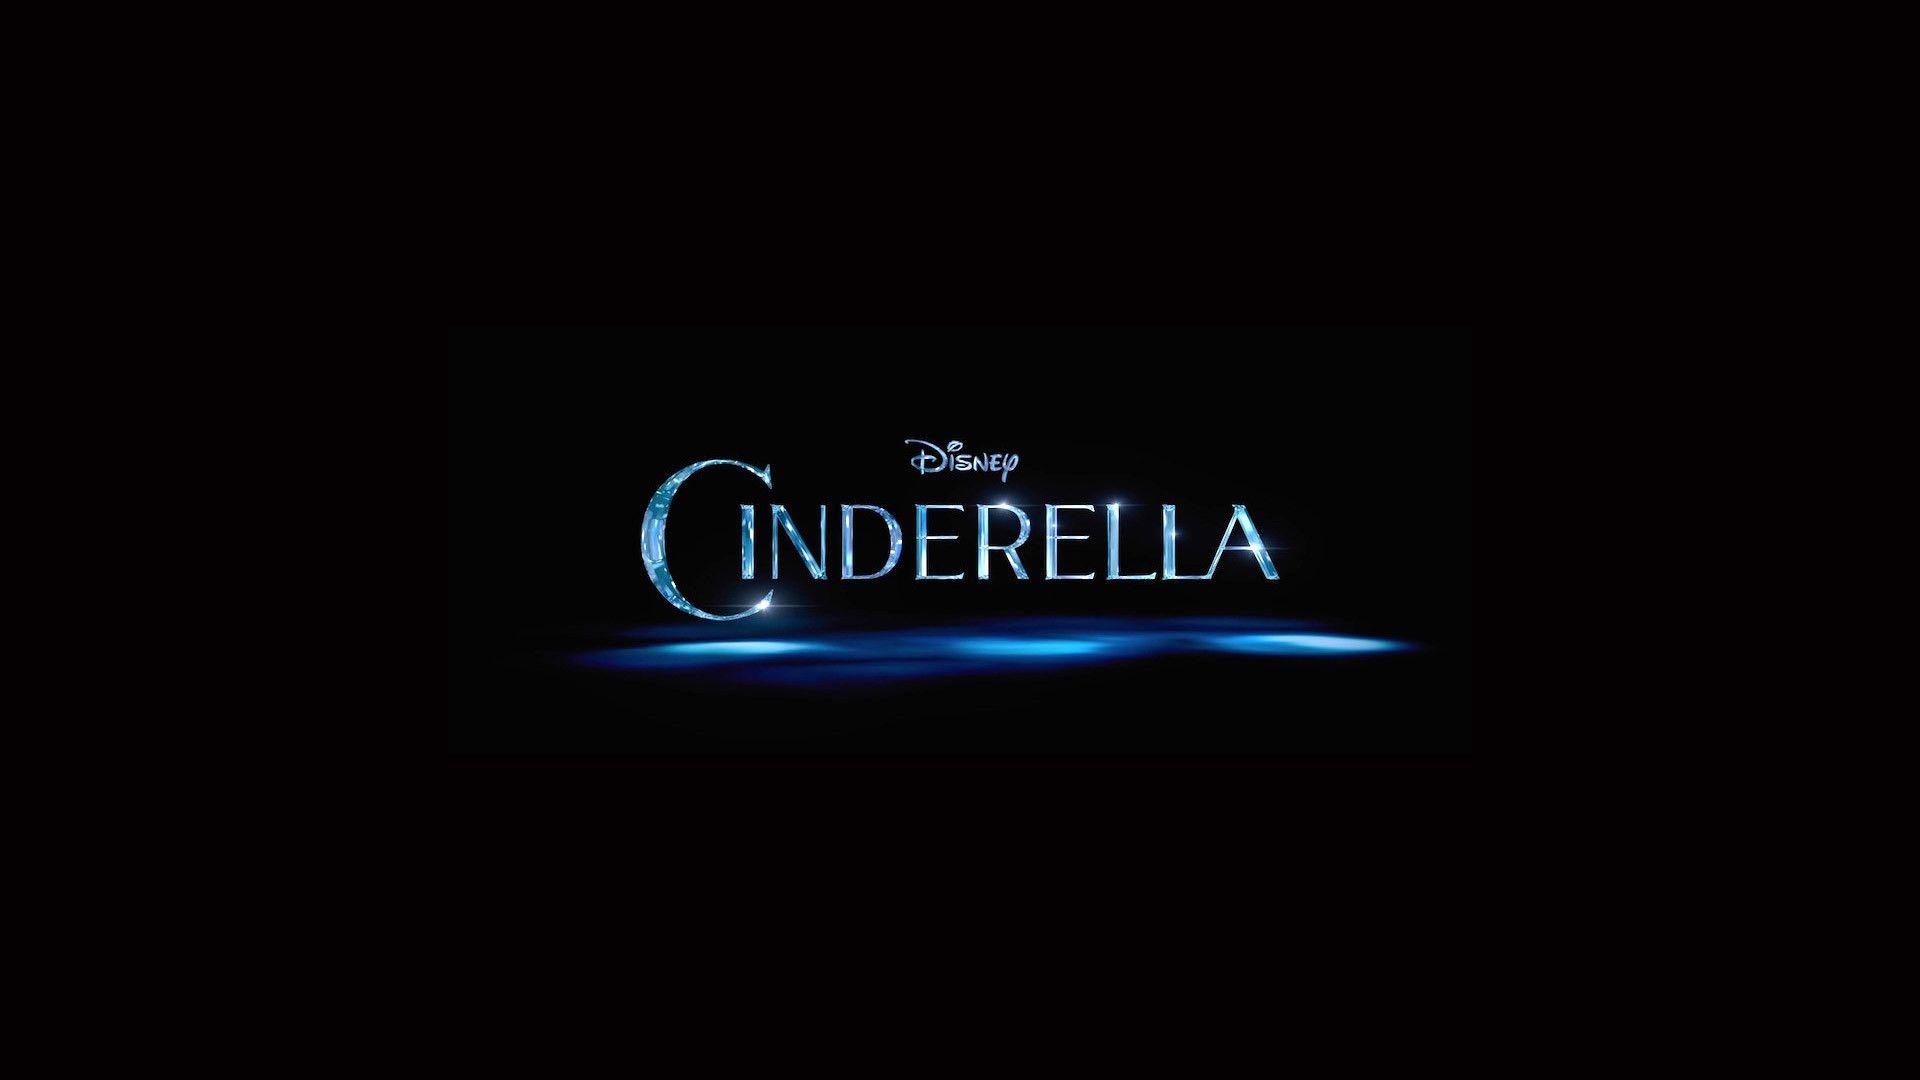 Disney Cinderella Wallpaper.com